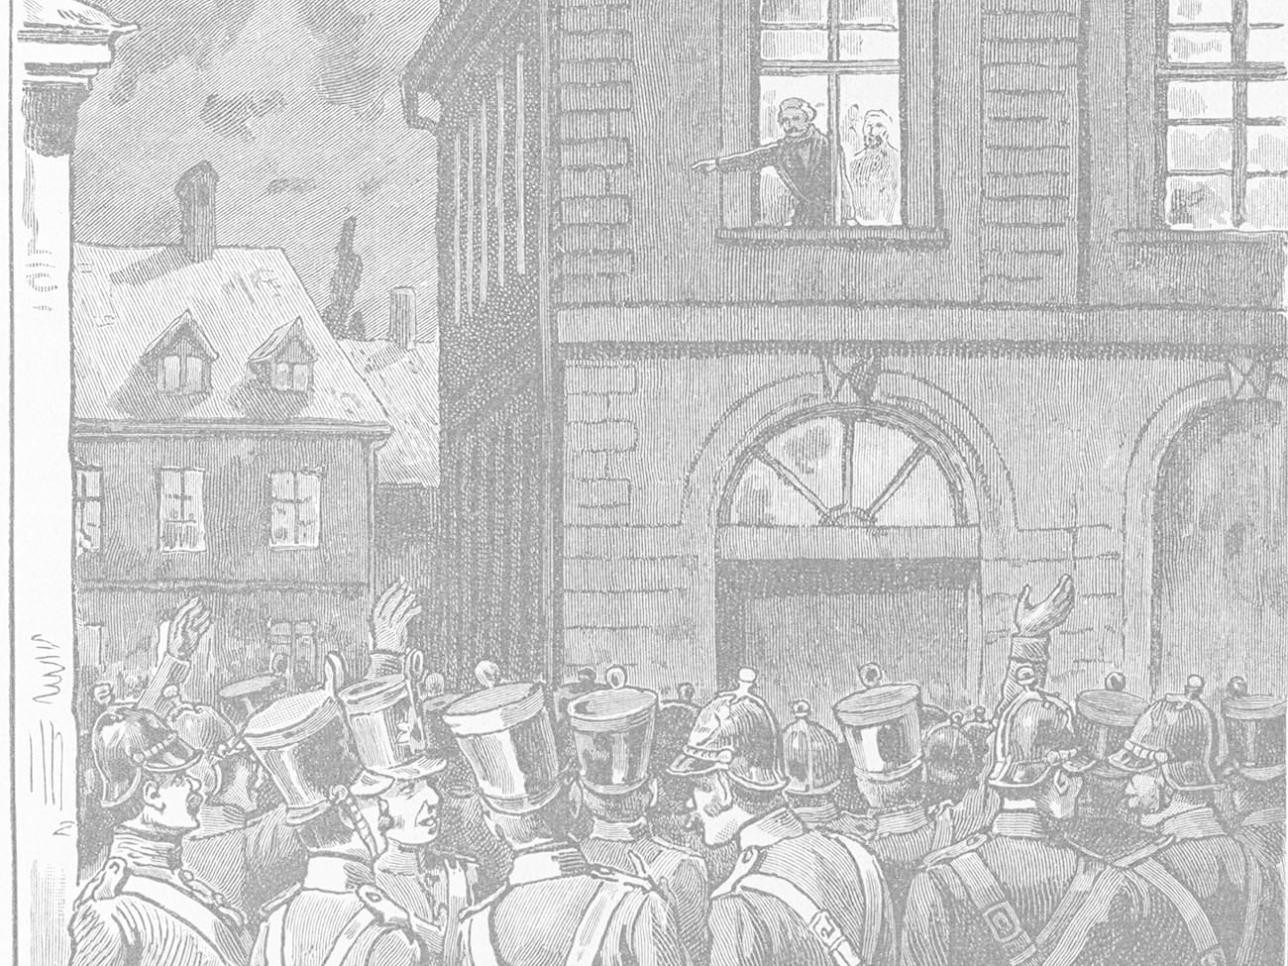 Le 13 mai 1849, le révolutionnaire badois Amand Goegg proclame les décisions d'Offenburg depuis une fenêtre de l'hôtel de ville de Rastatt 